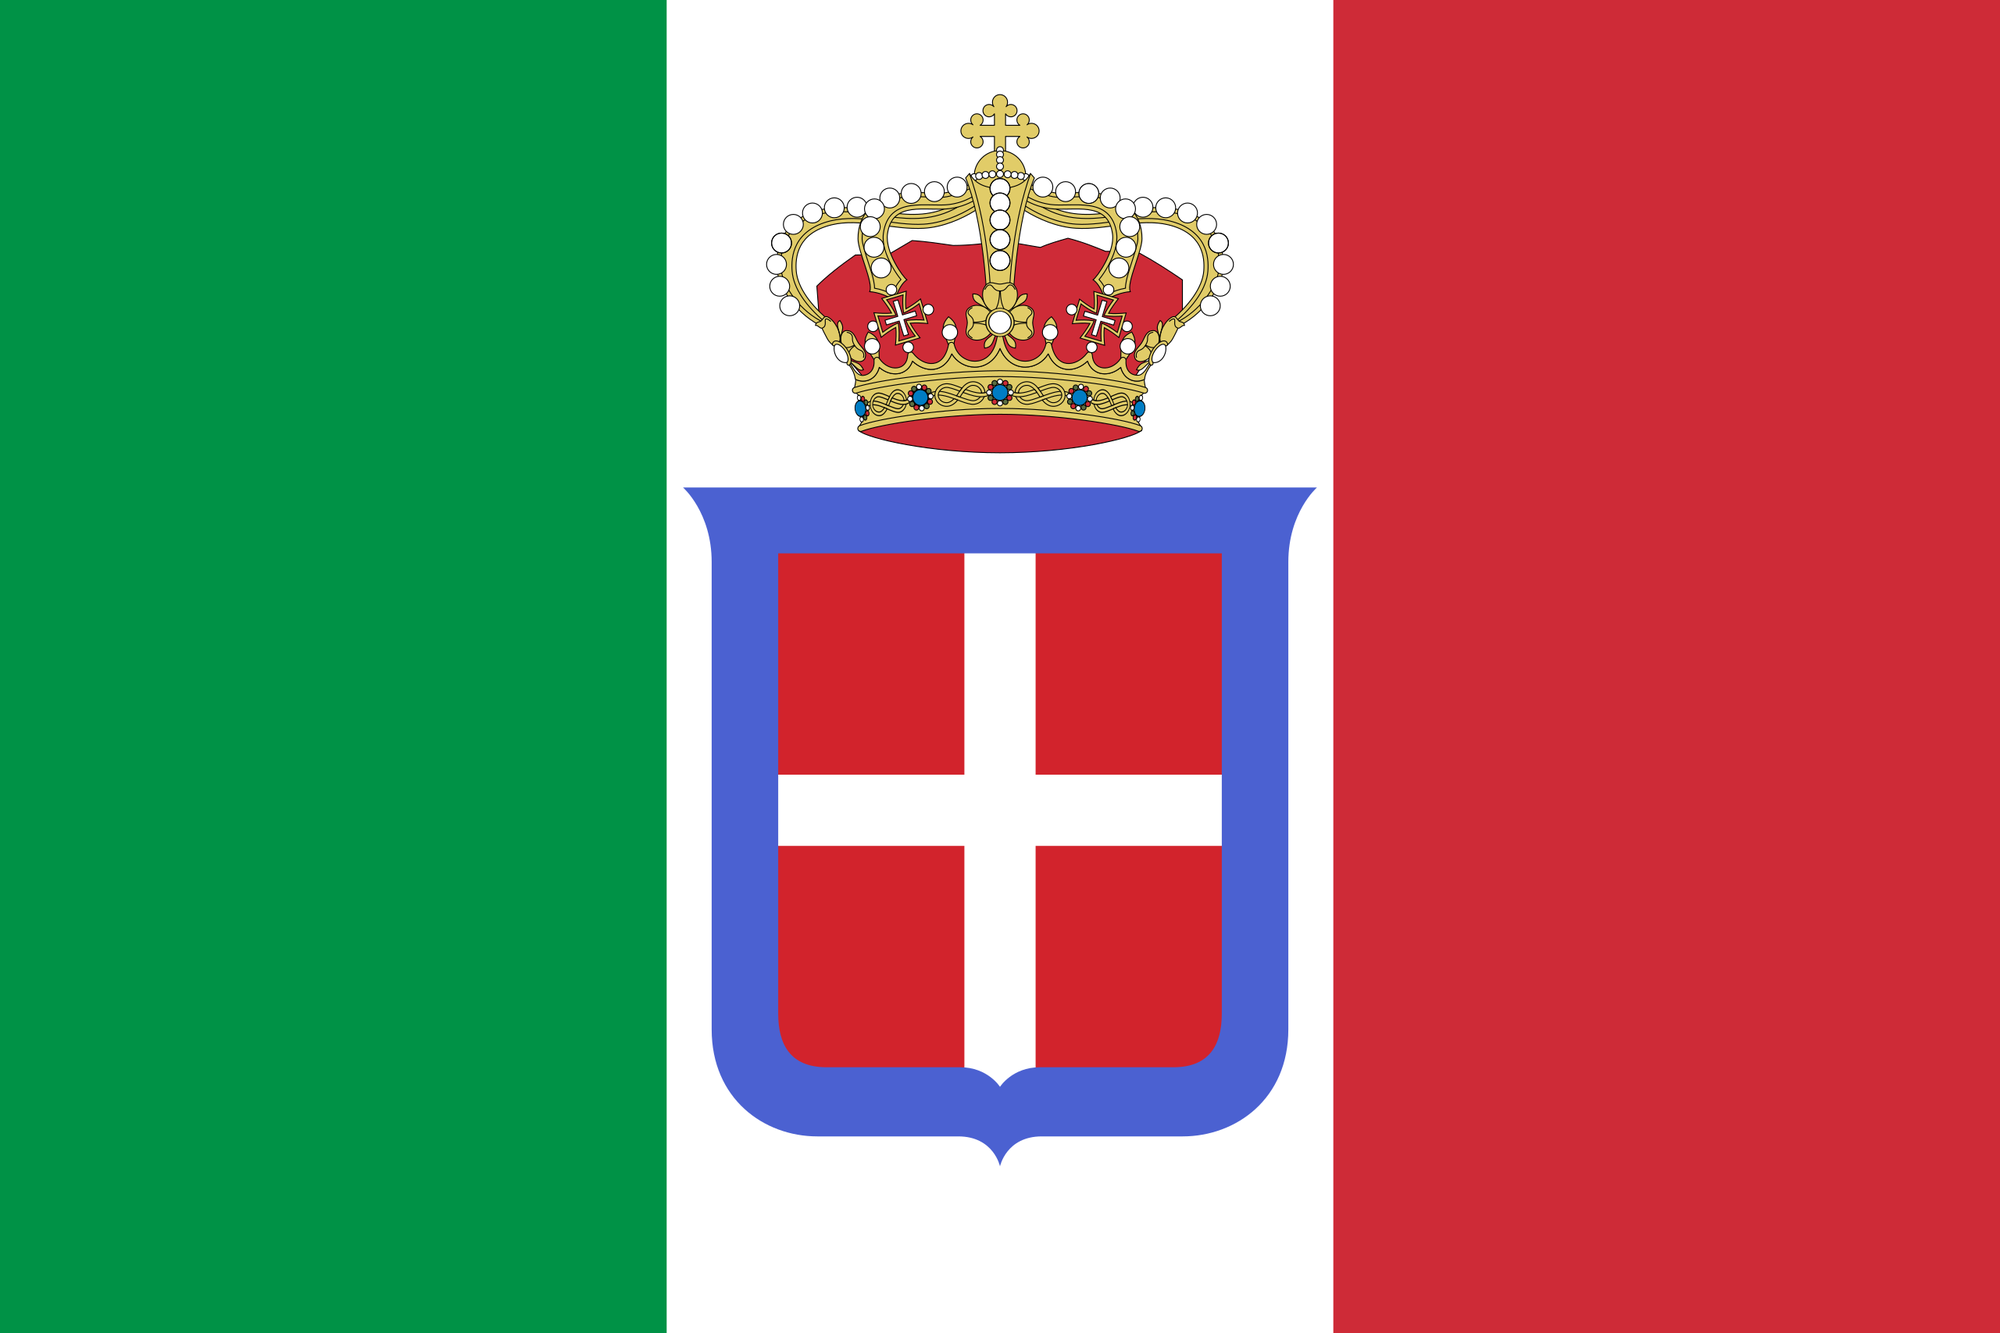 De Italiaanse vlag tot 1946. Merk vooral het wapenschild van het huis van Savoie op met de blauwe band.